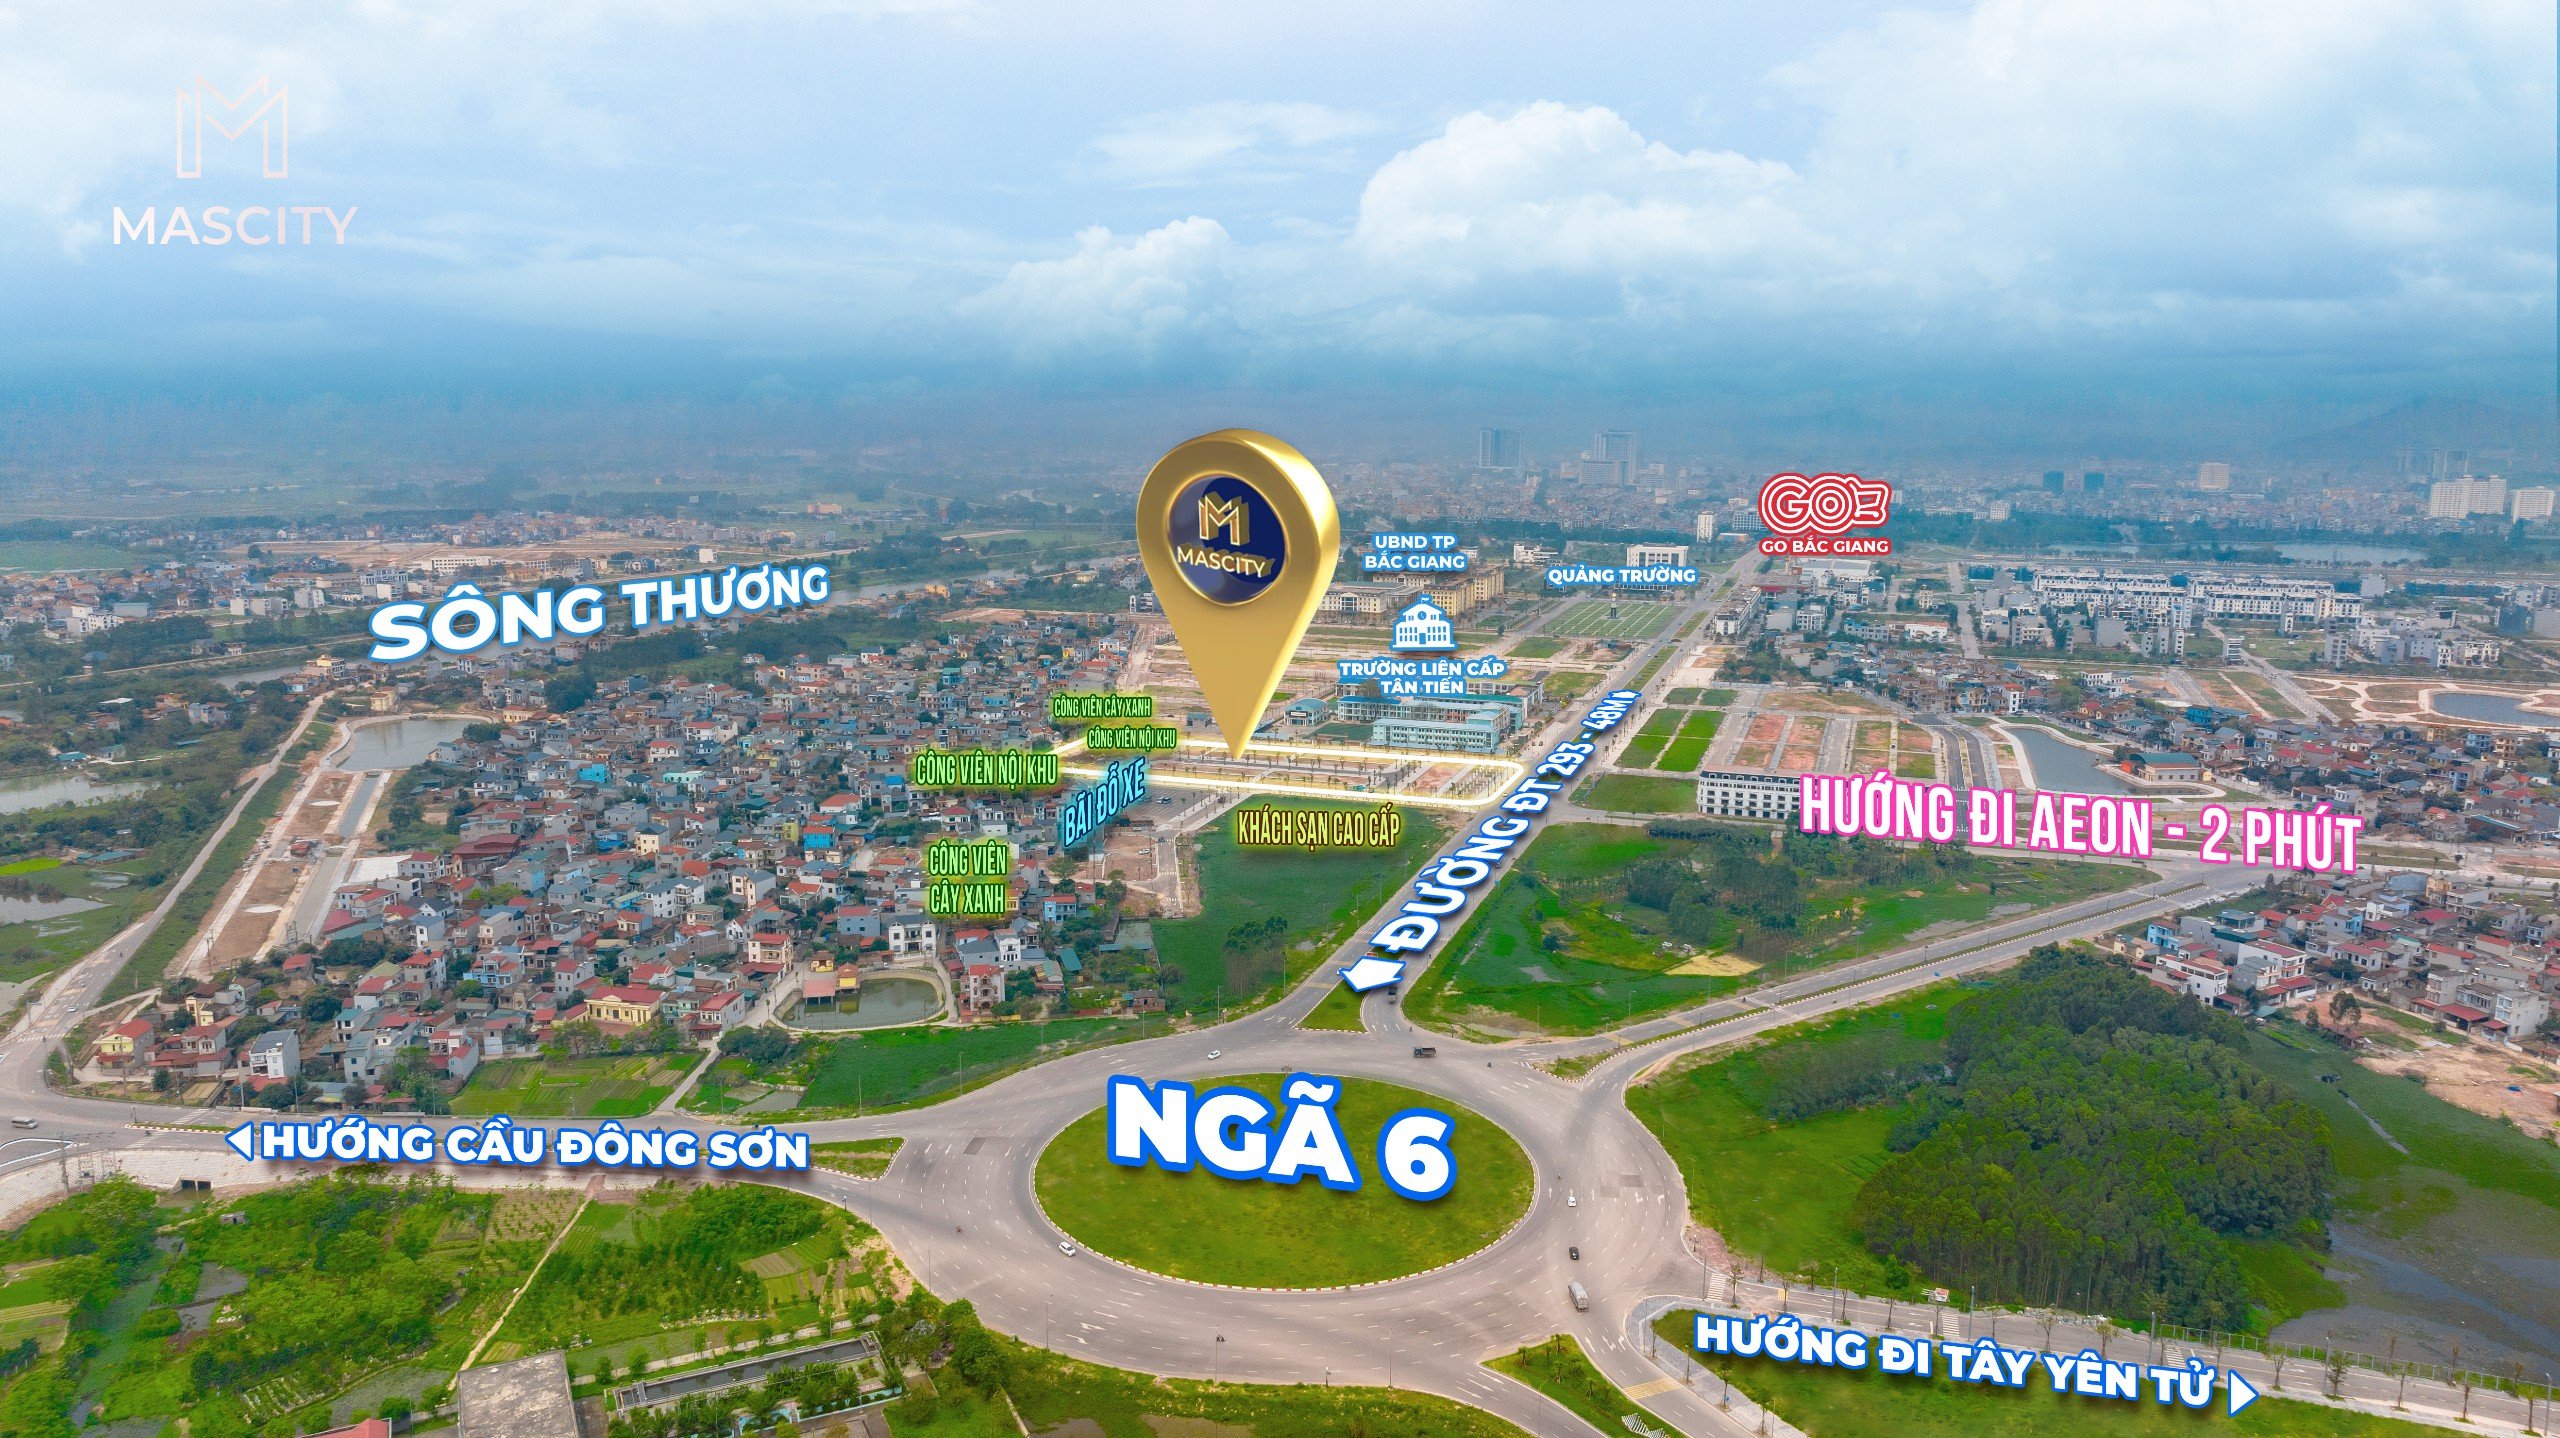 Bán đất nền trung tâm thành phố Bắc Giang, vị trí đắc địa, CK 6%, HTLS 0% đến 70% trong 12 tháng 3